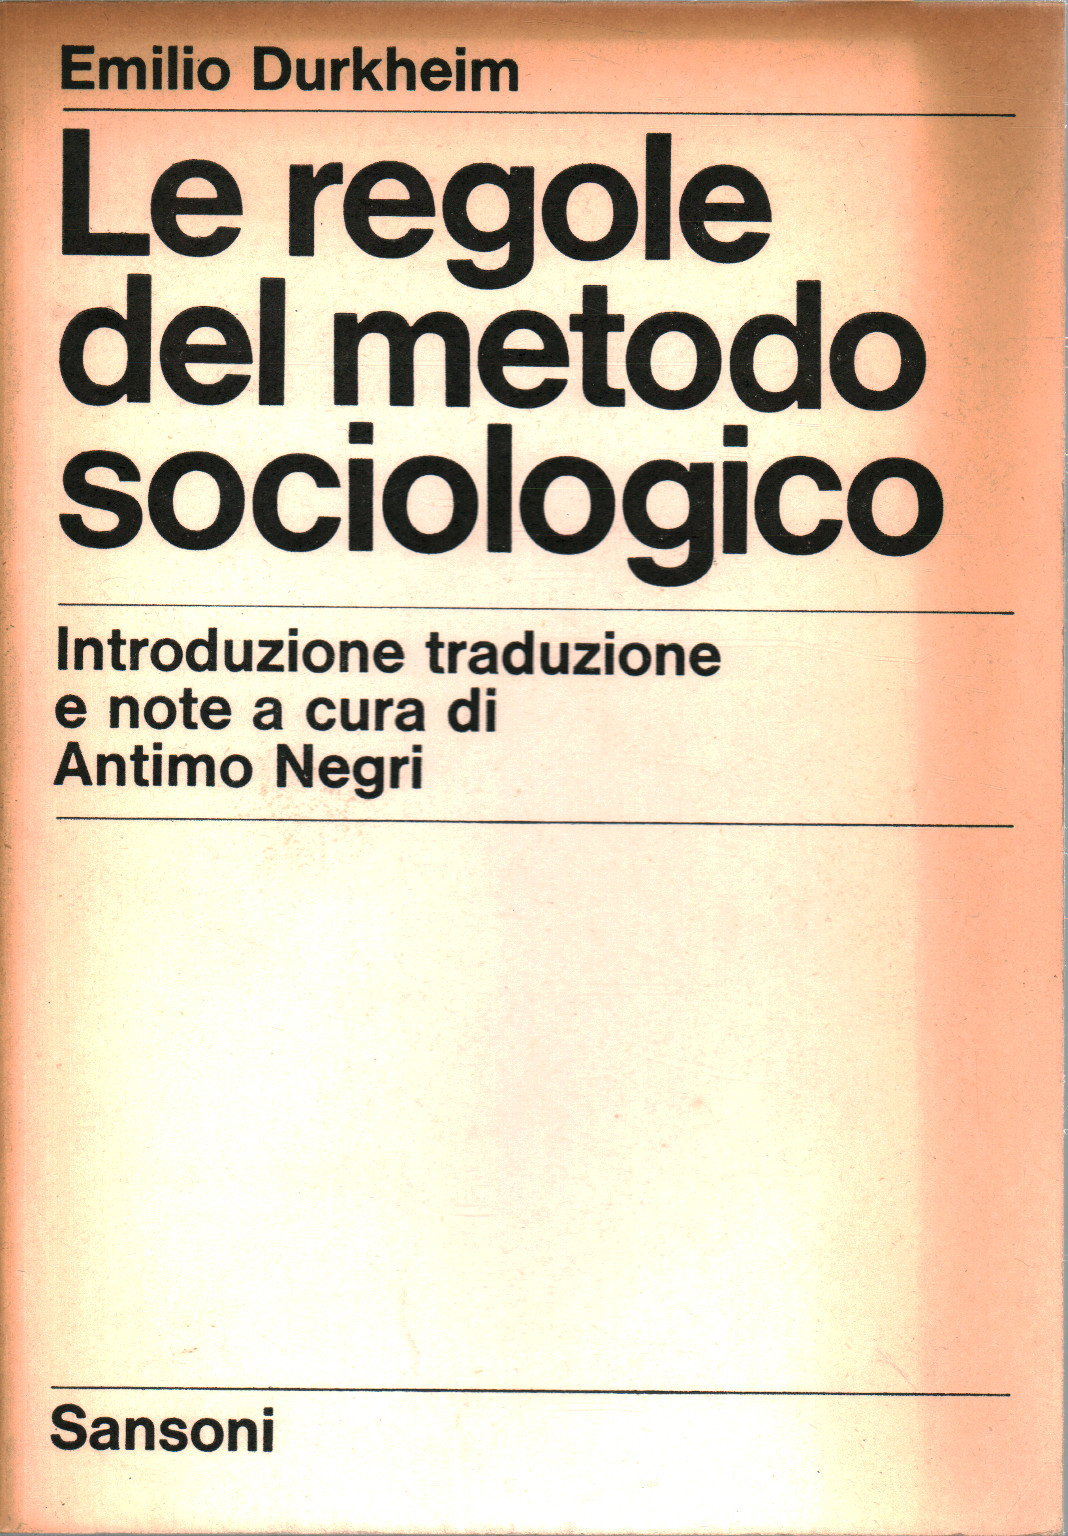 Le regole del metodo sociologico, s.a.